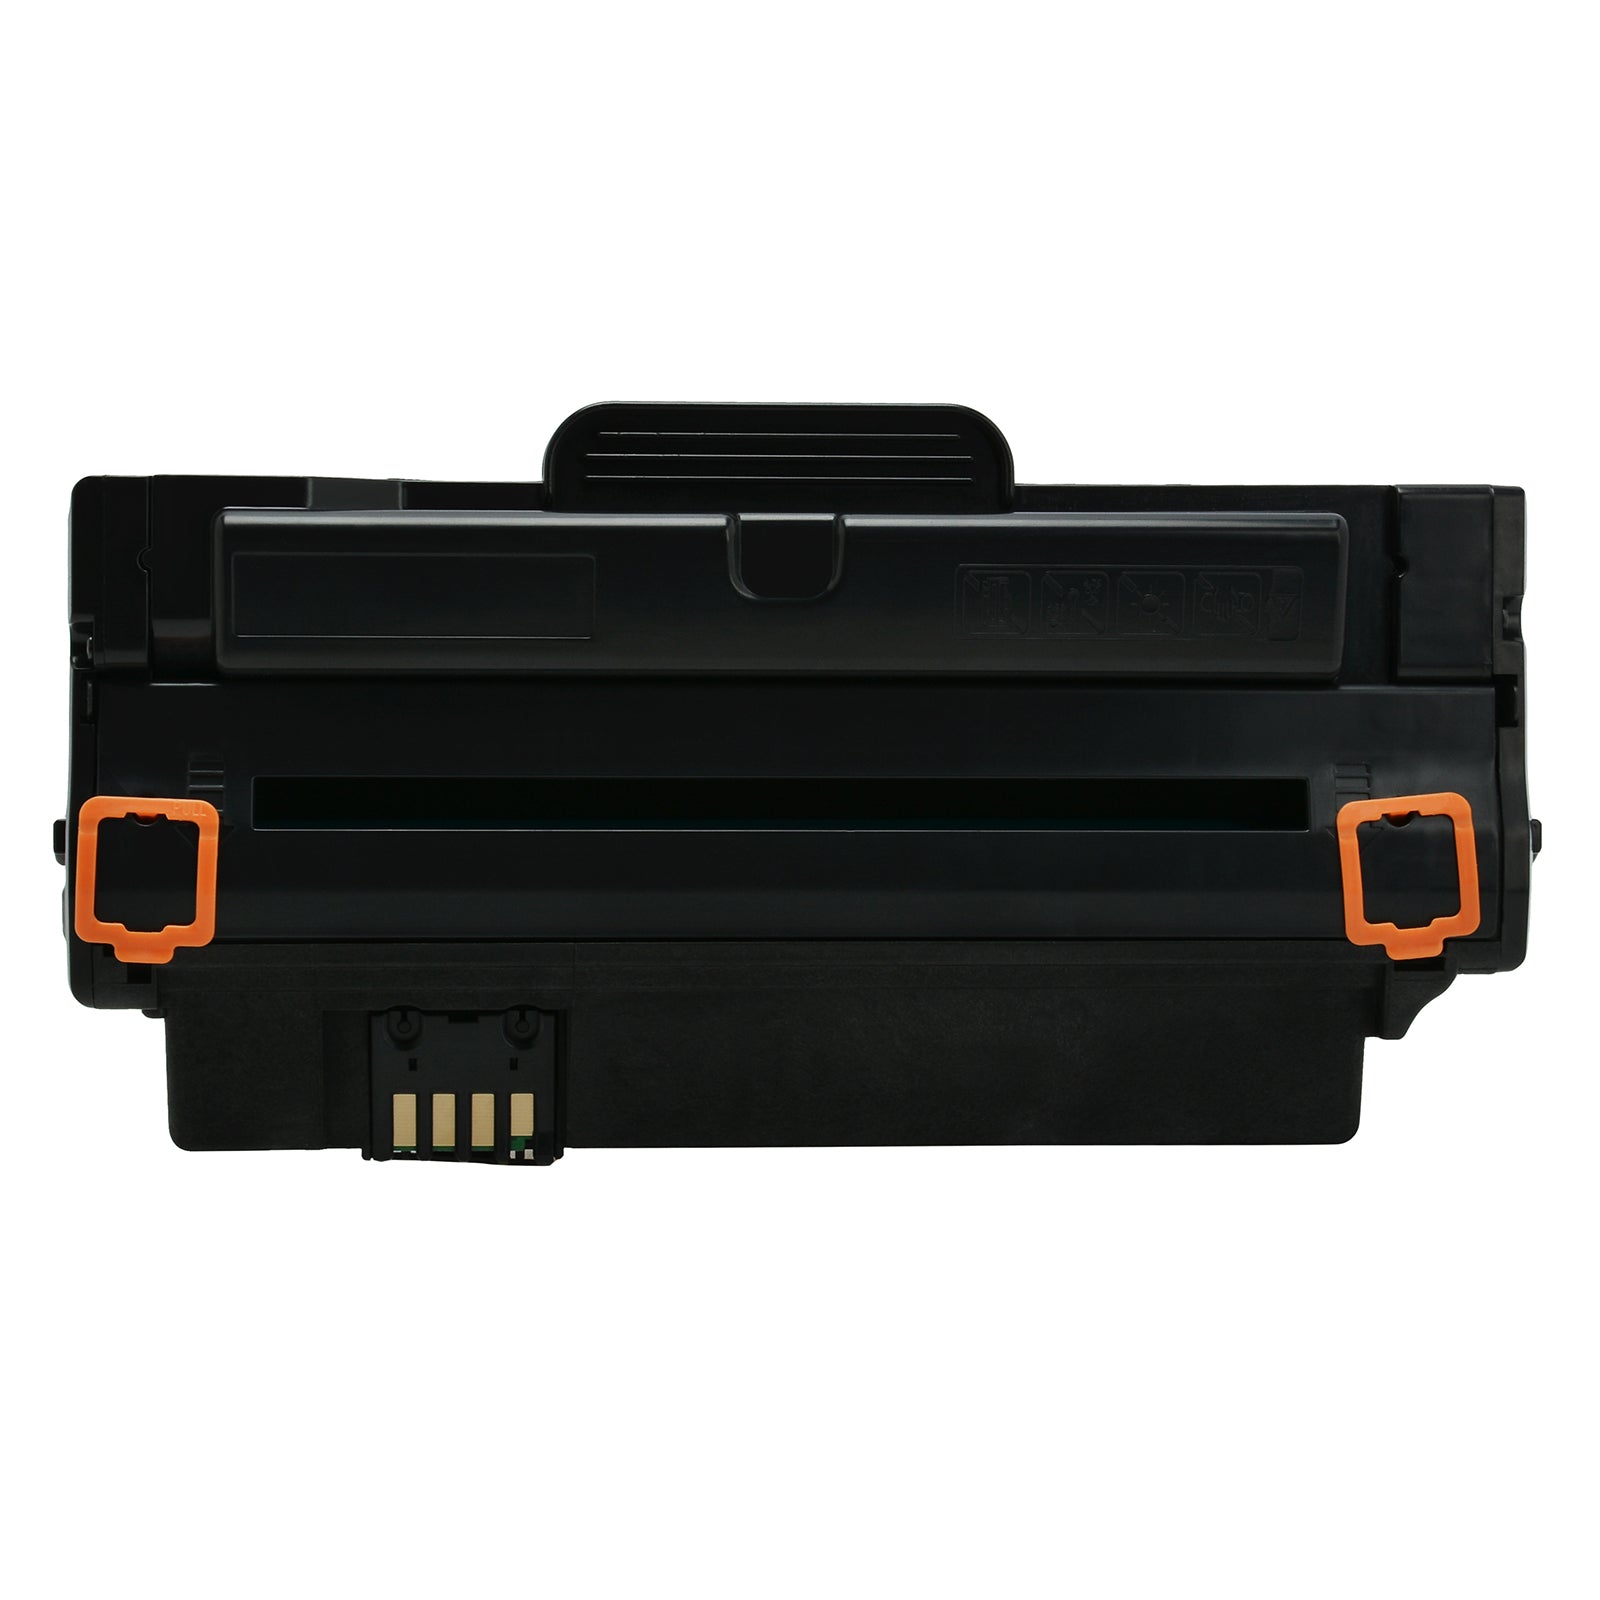 SKY  105L Compatible Toner Cartridge MLT-D105L for Samsung SCX-4623